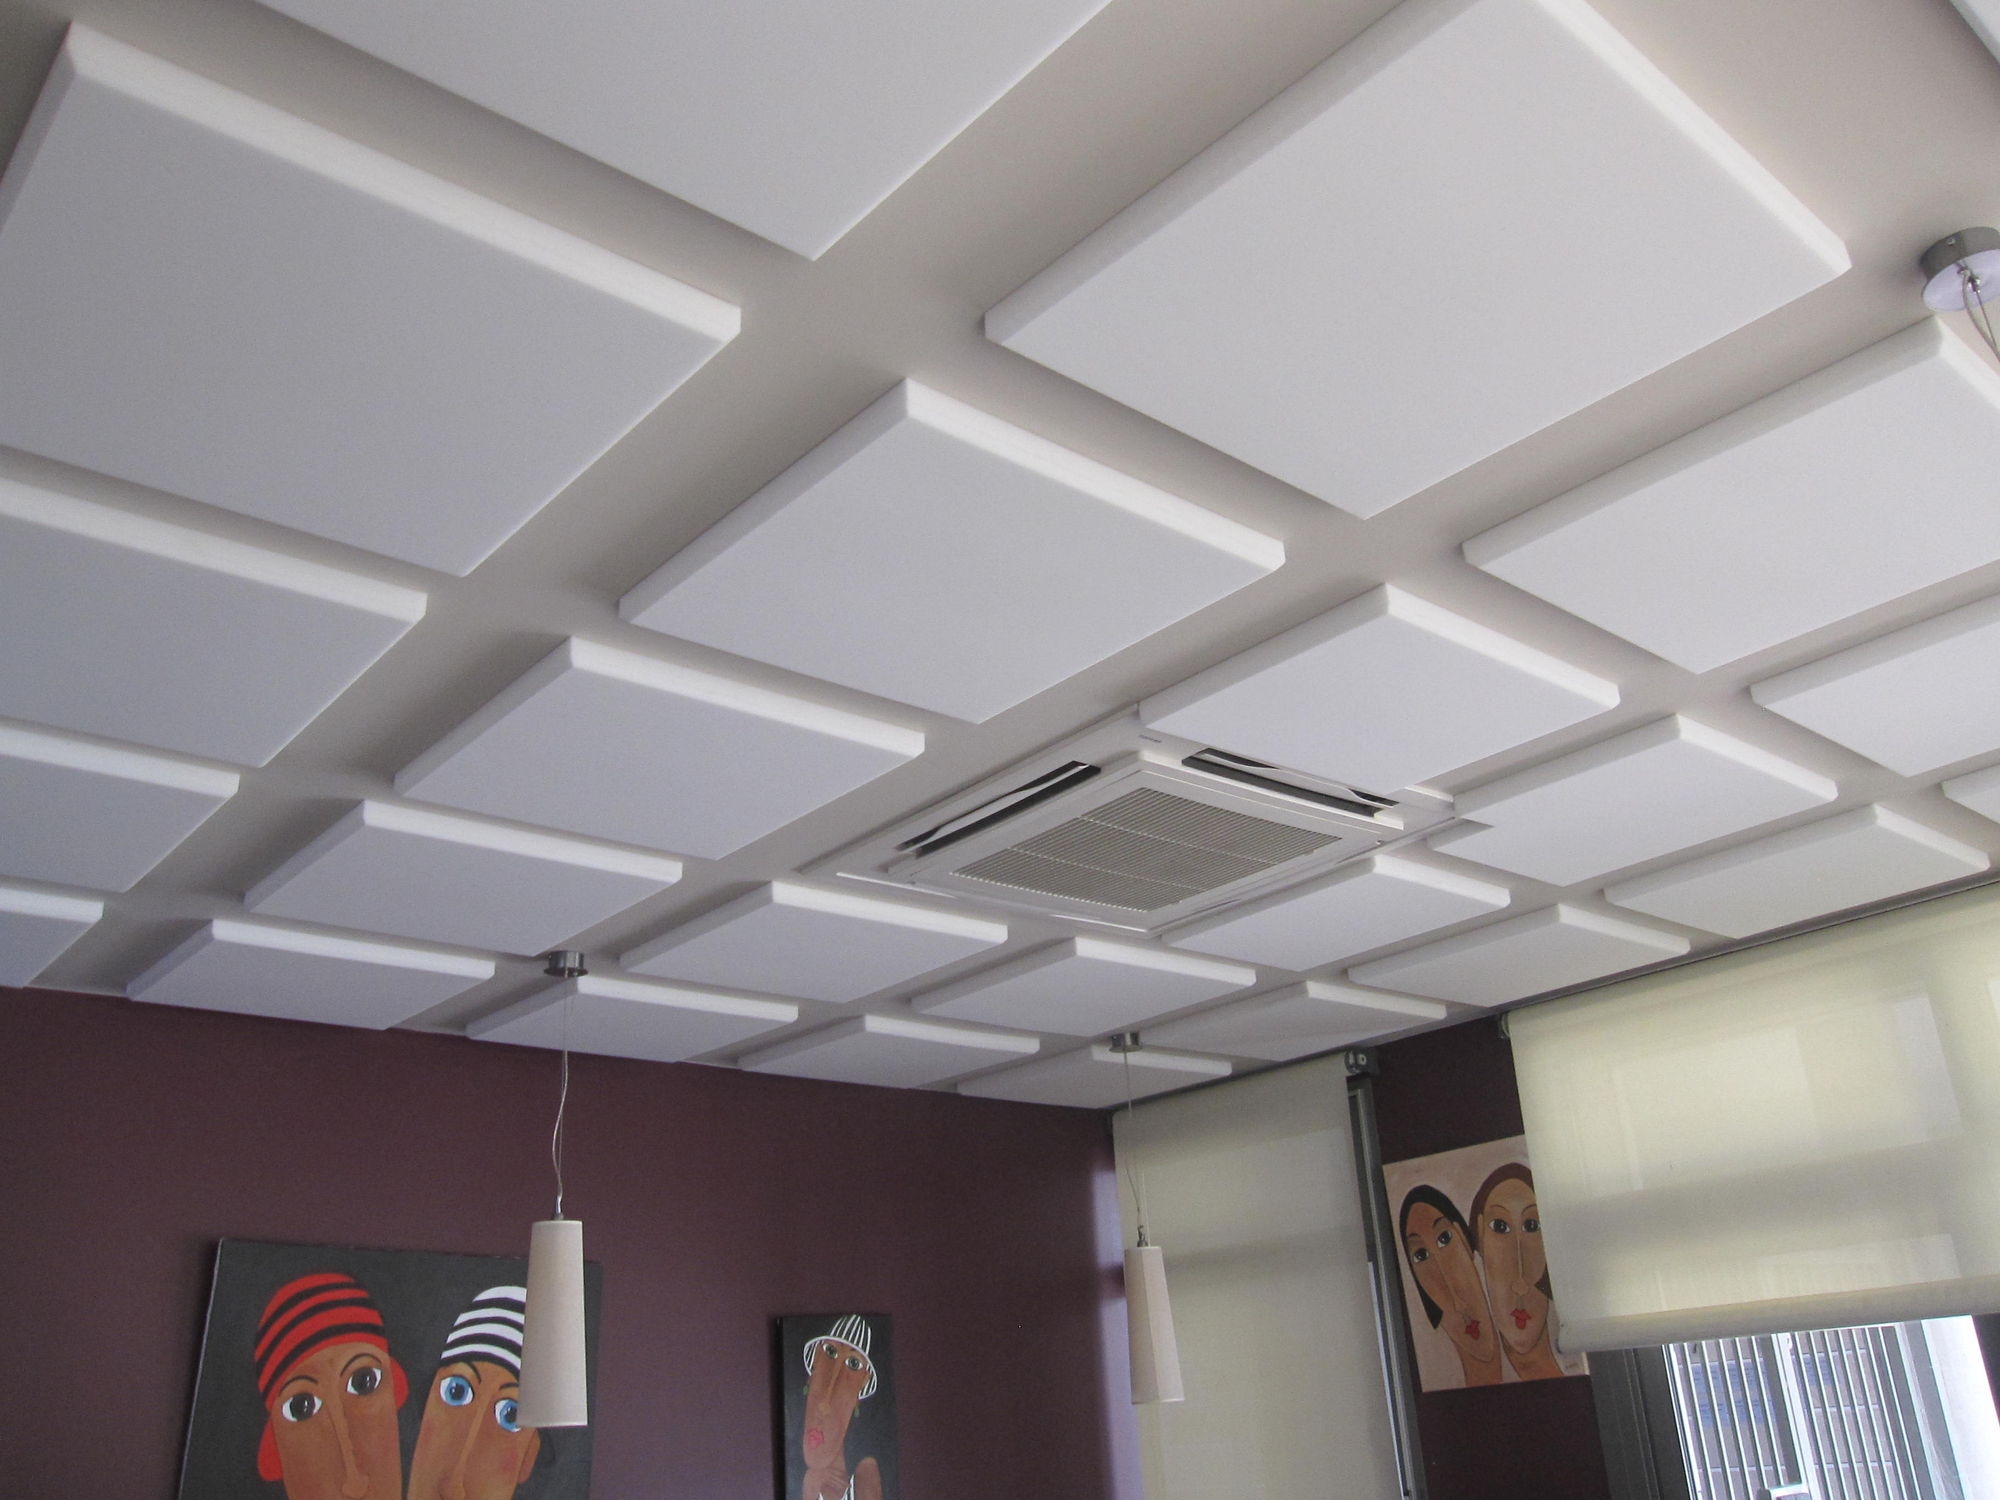 Acoustic Tiles For Drop Ceiling Acoustic Tiles For Drop Ceiling acoustic drop ceiling wooden suspended ceiling mdf tile 2000 X 1500